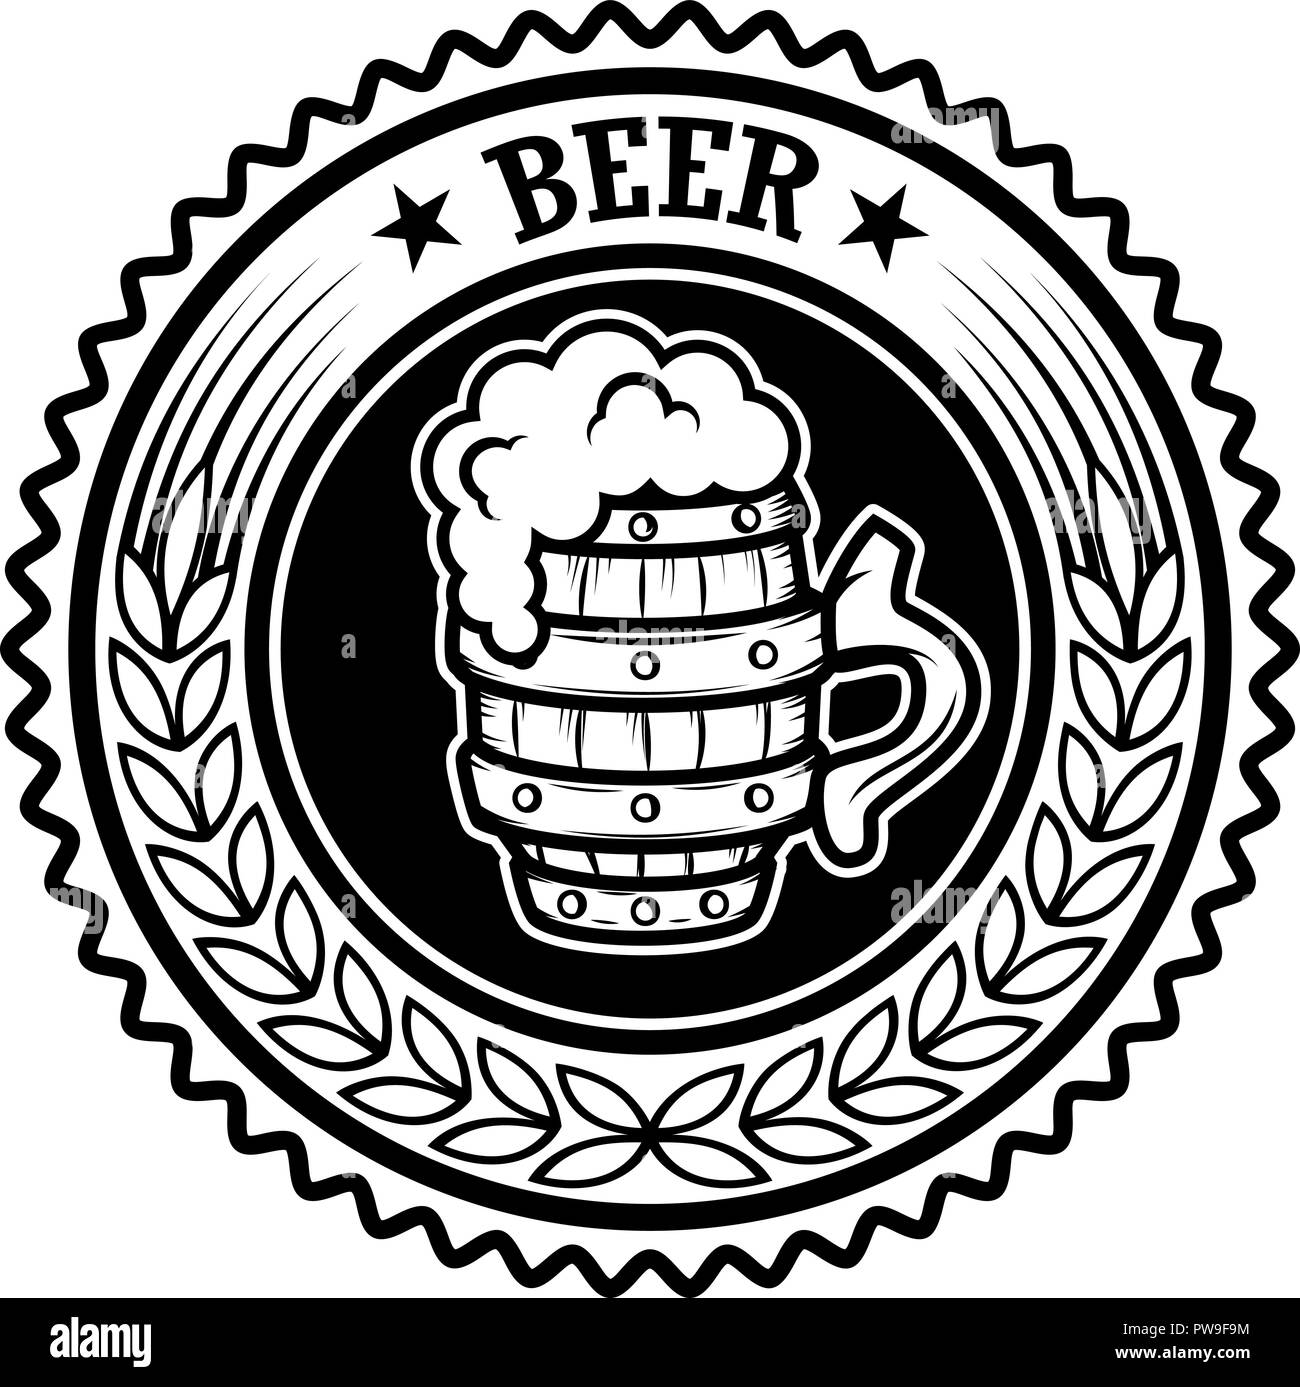 Vintage beer label. Design elements for logo, label, emblem, sign, menu. Vector illustration Stock Vector